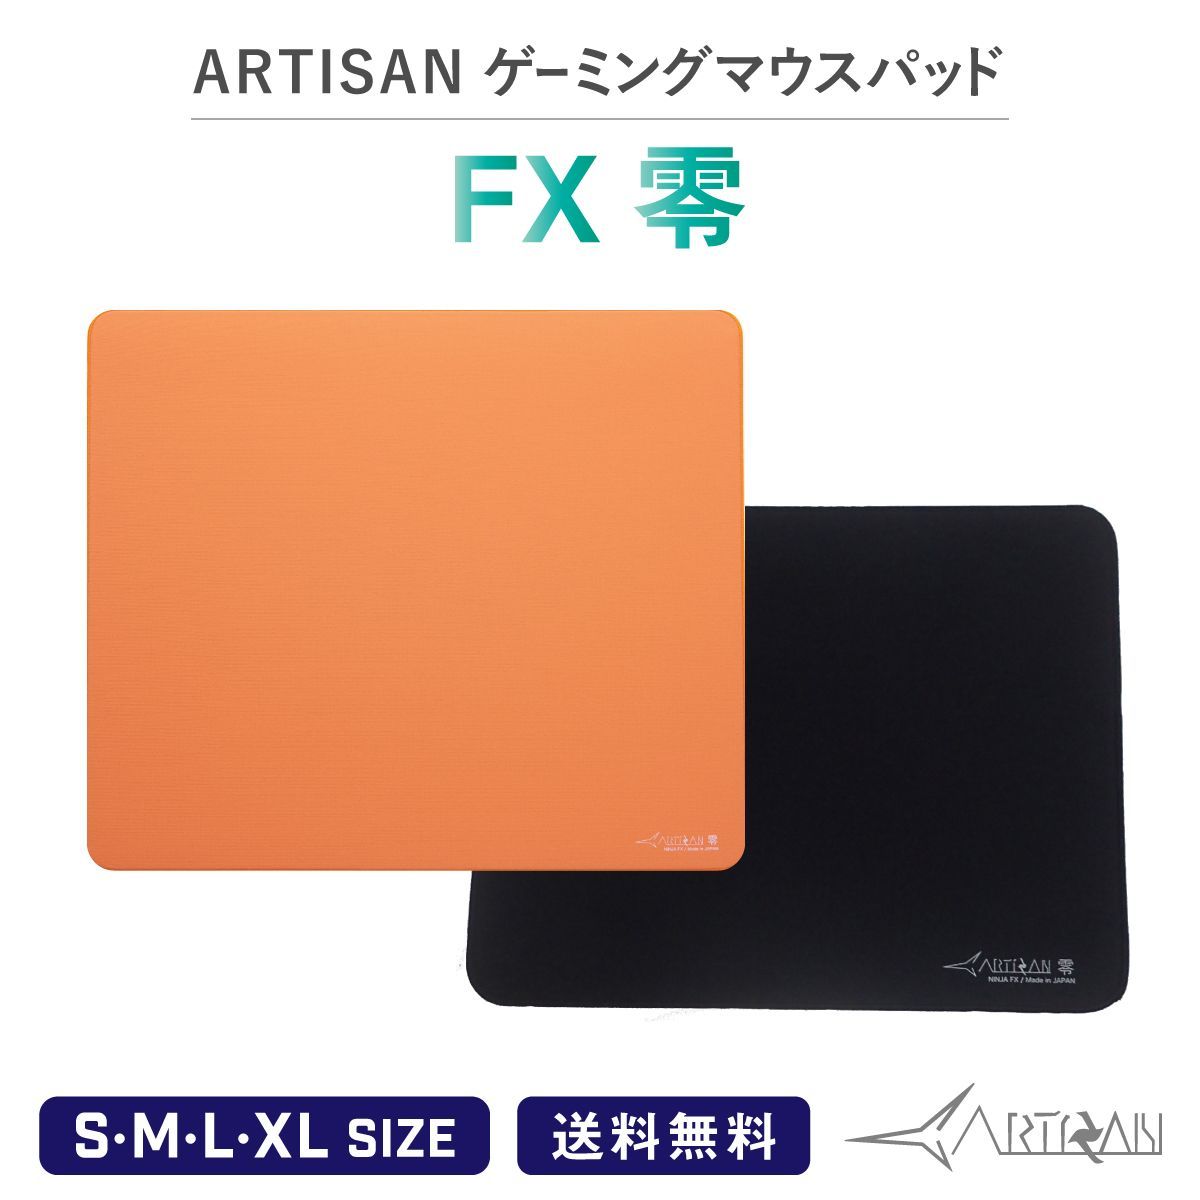 【新品】ARTISAN 零 FX 橙 Lサイズ